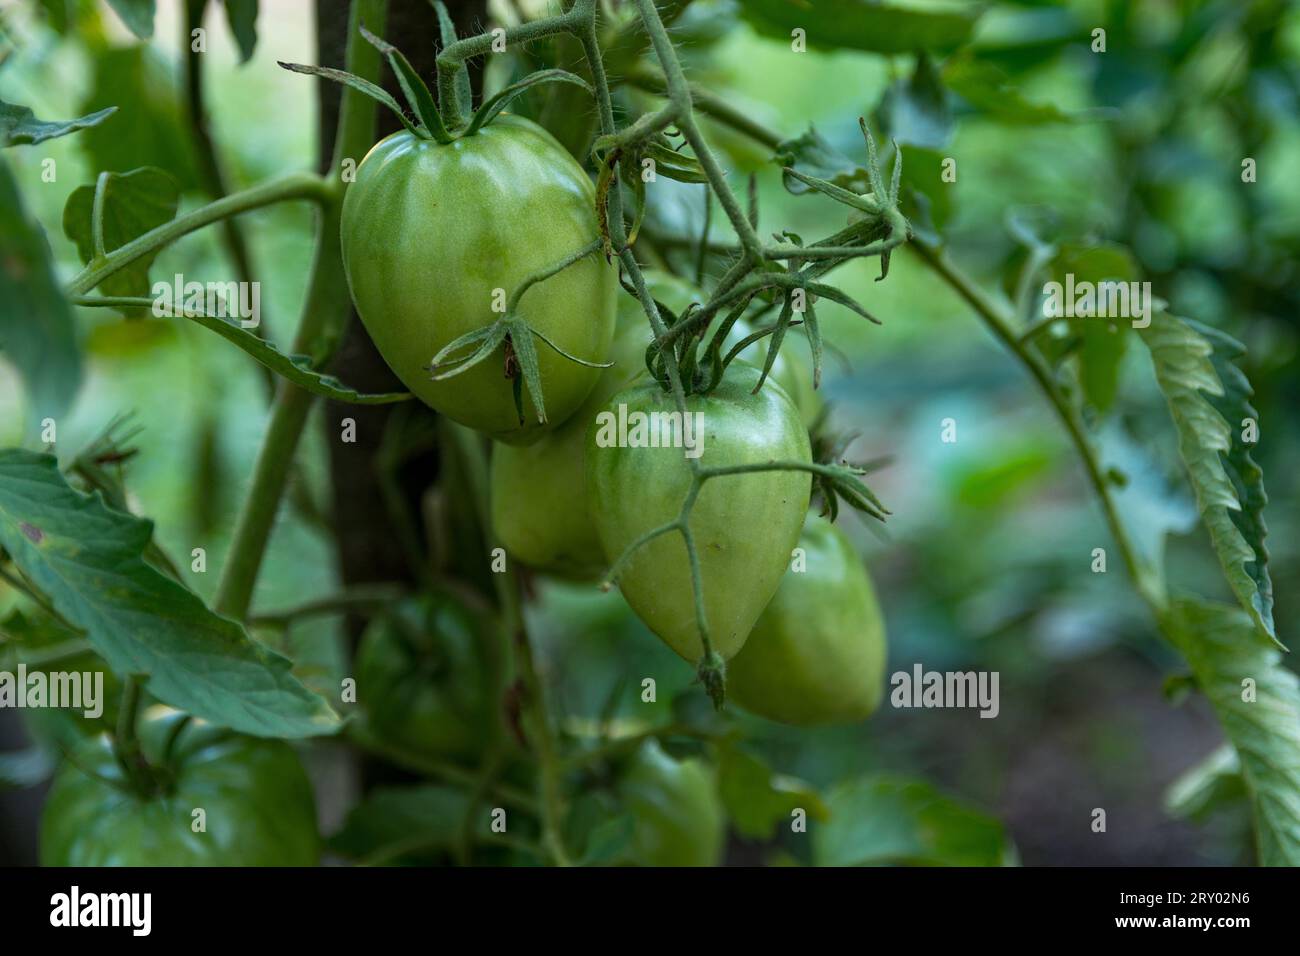 Tomates cultivées bio accrochées à la vigne, encore jeunes et vertes, un jour d'été dans le jardin. Concept agricole, gros plan Banque D'Images